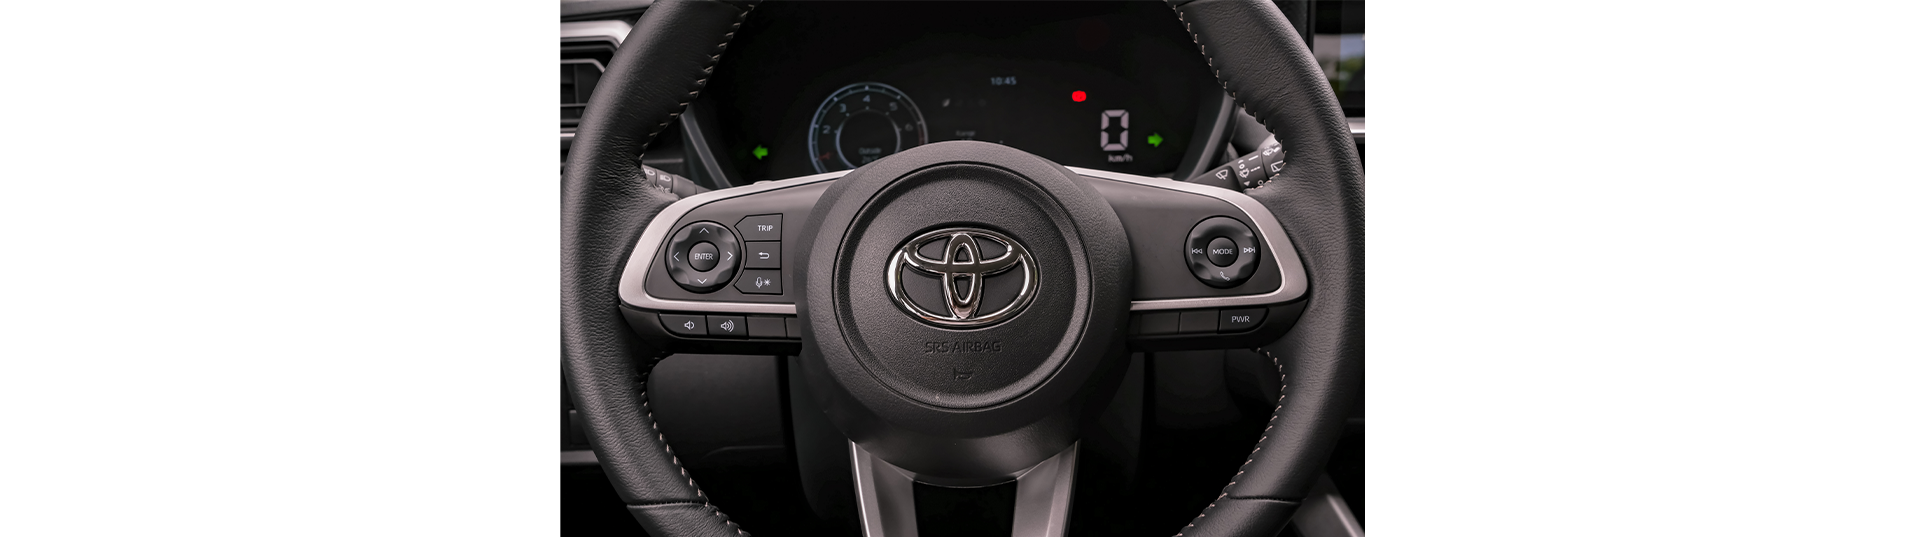 Toyota Raize – đi cùng nhau là nhà - 15